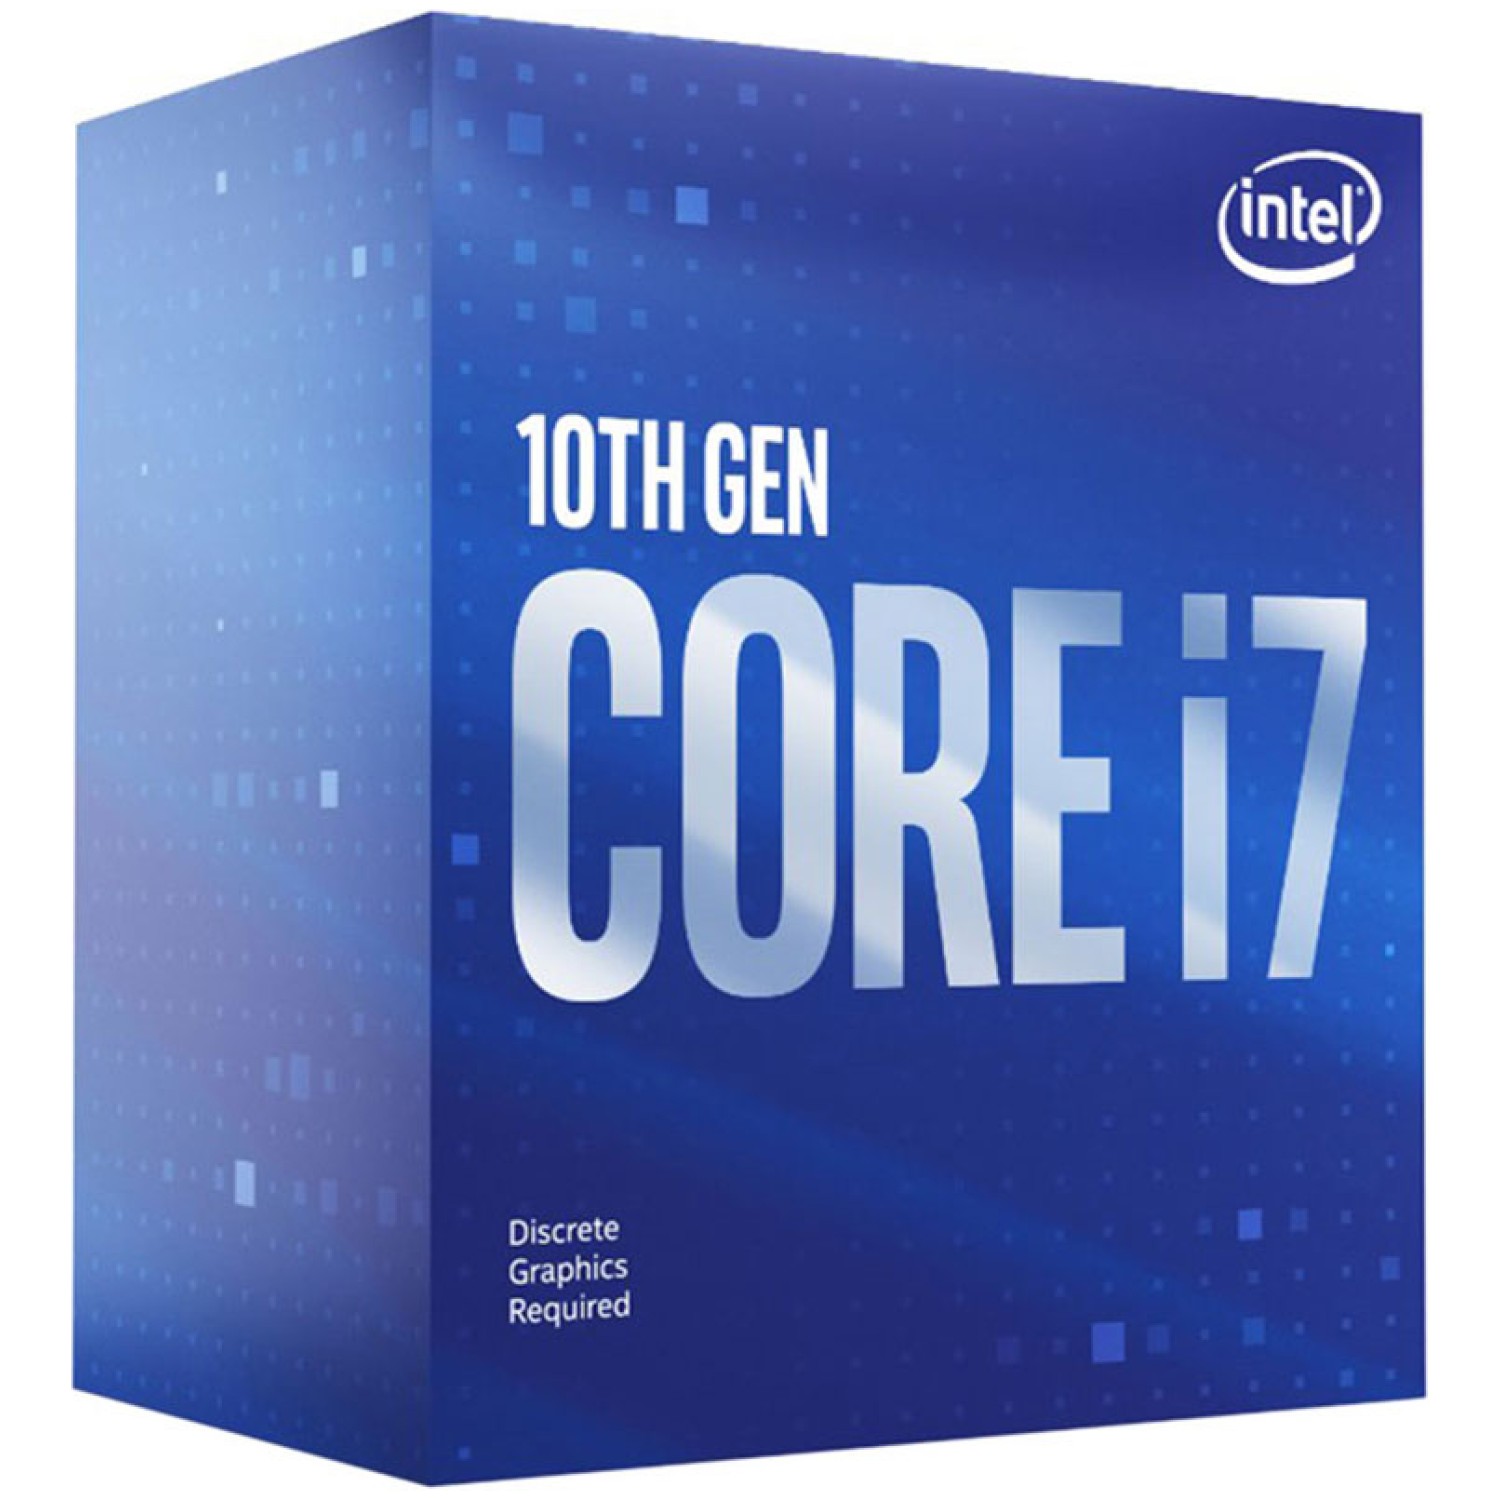 Procesor Intel 1200 Core i7 10700F 2.9Hz/4.8GHz Box 65W - brez grafike